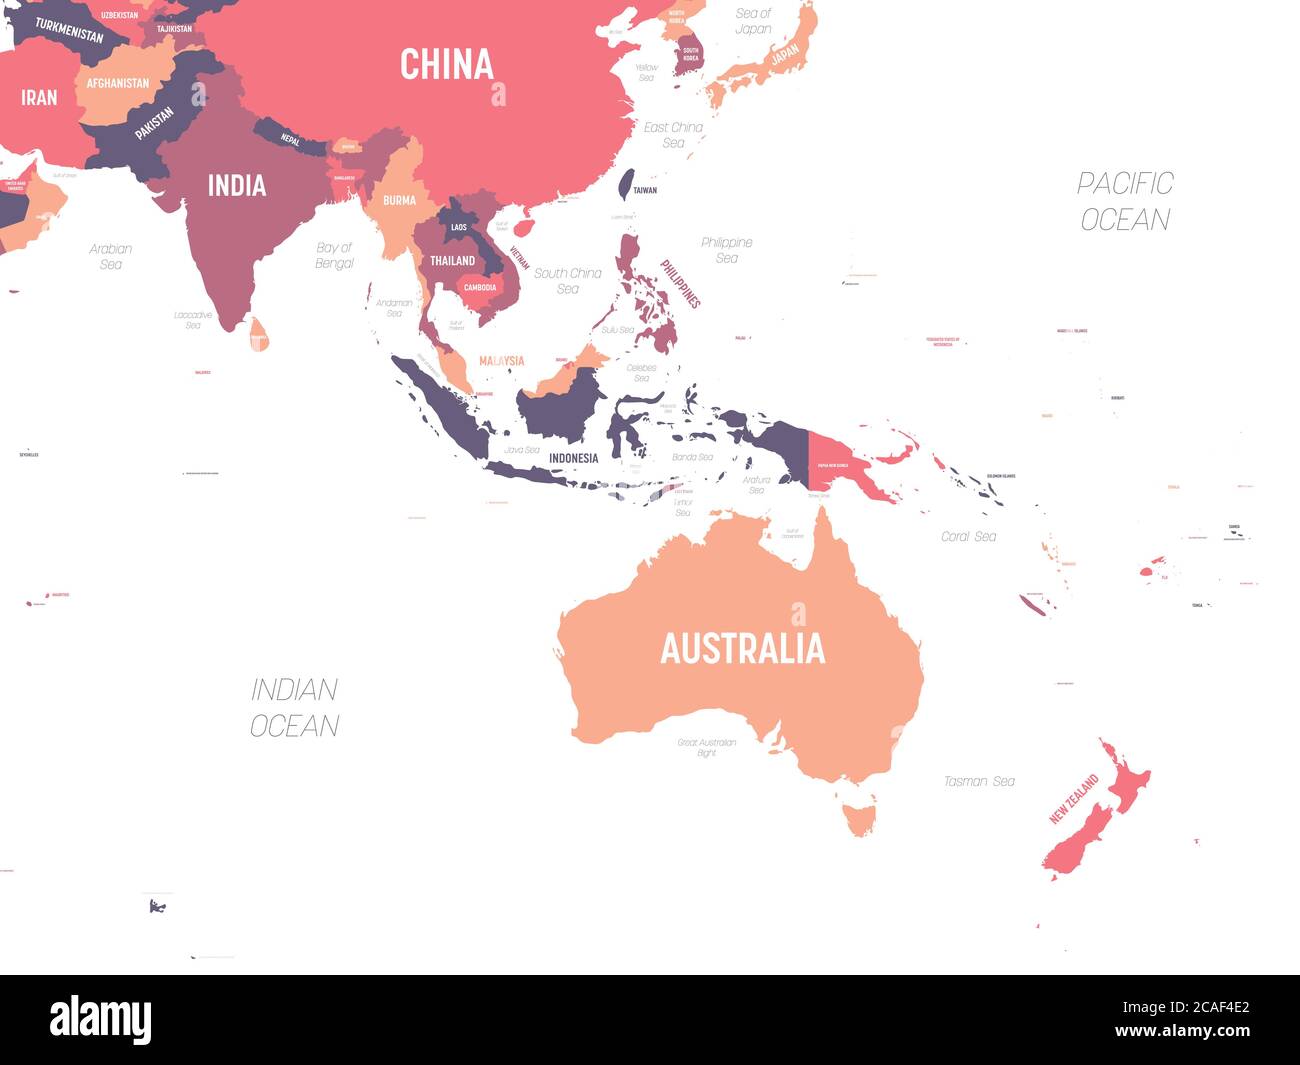 Karte Australien und Südostasien. Hoch detaillierte politische Karte der australischen und südöstlichen Asien Region mit Land, Ozean und Meer Namen Kennzeichnung. Stock Vektor